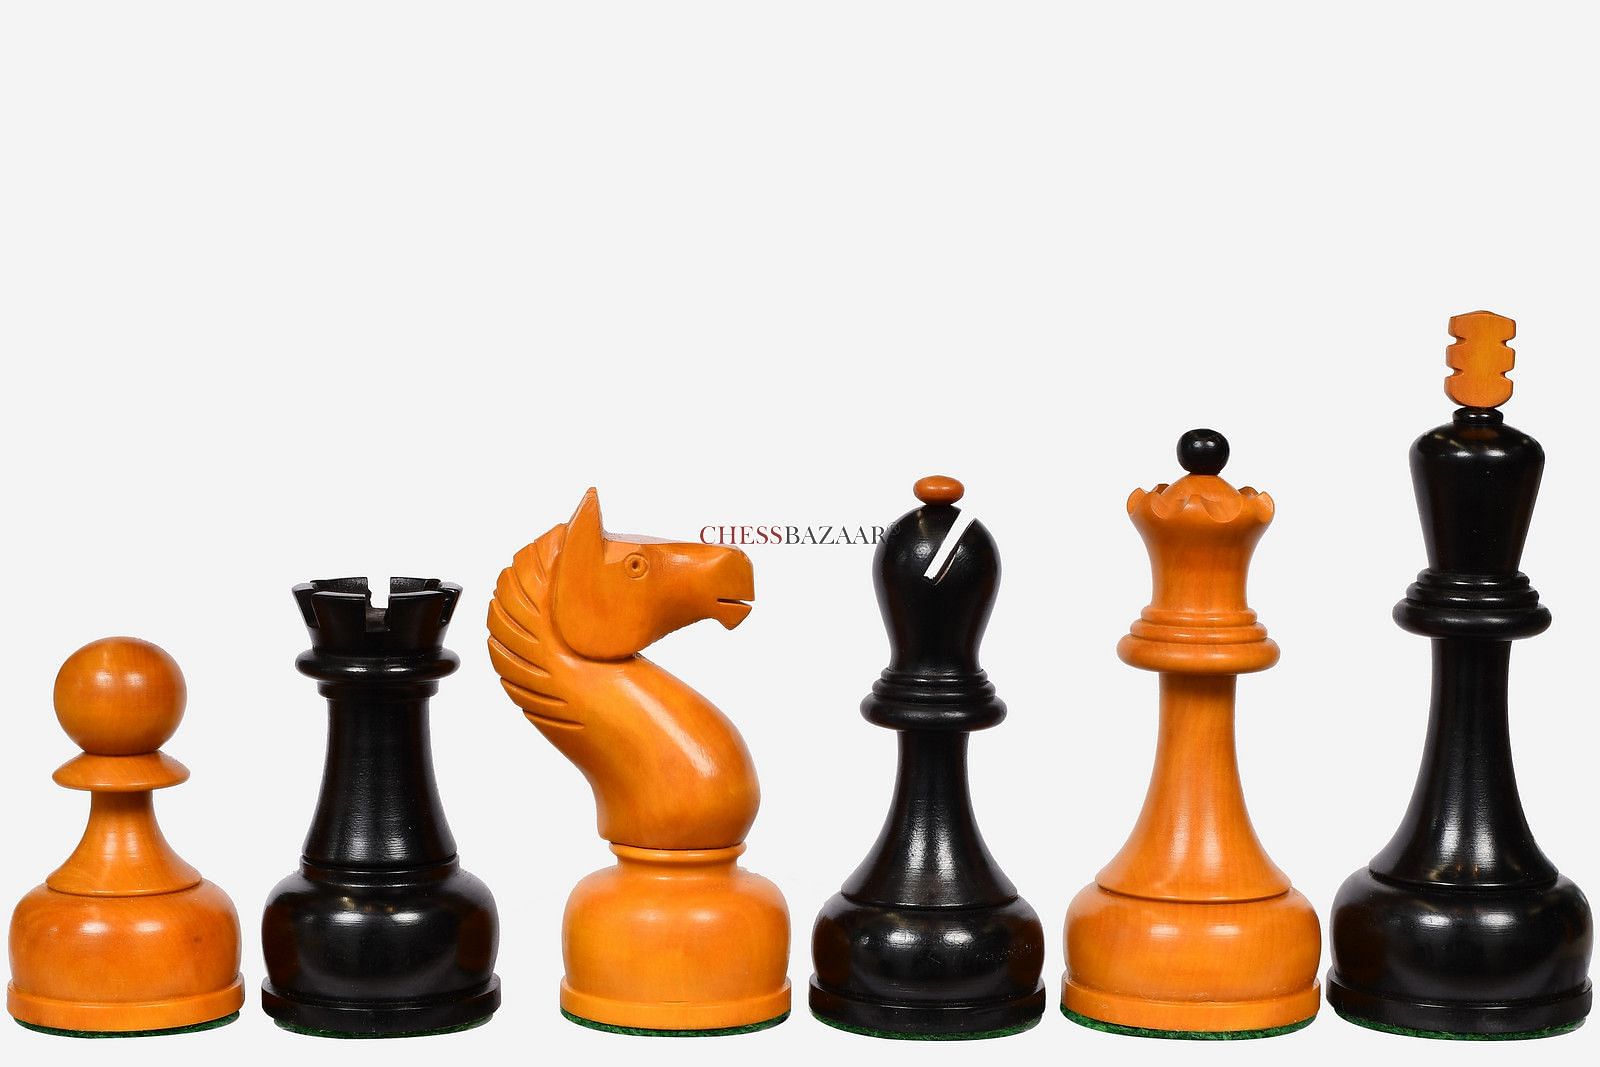 Russian Chess Grandmaster Mikhail Tal | Art Board Print